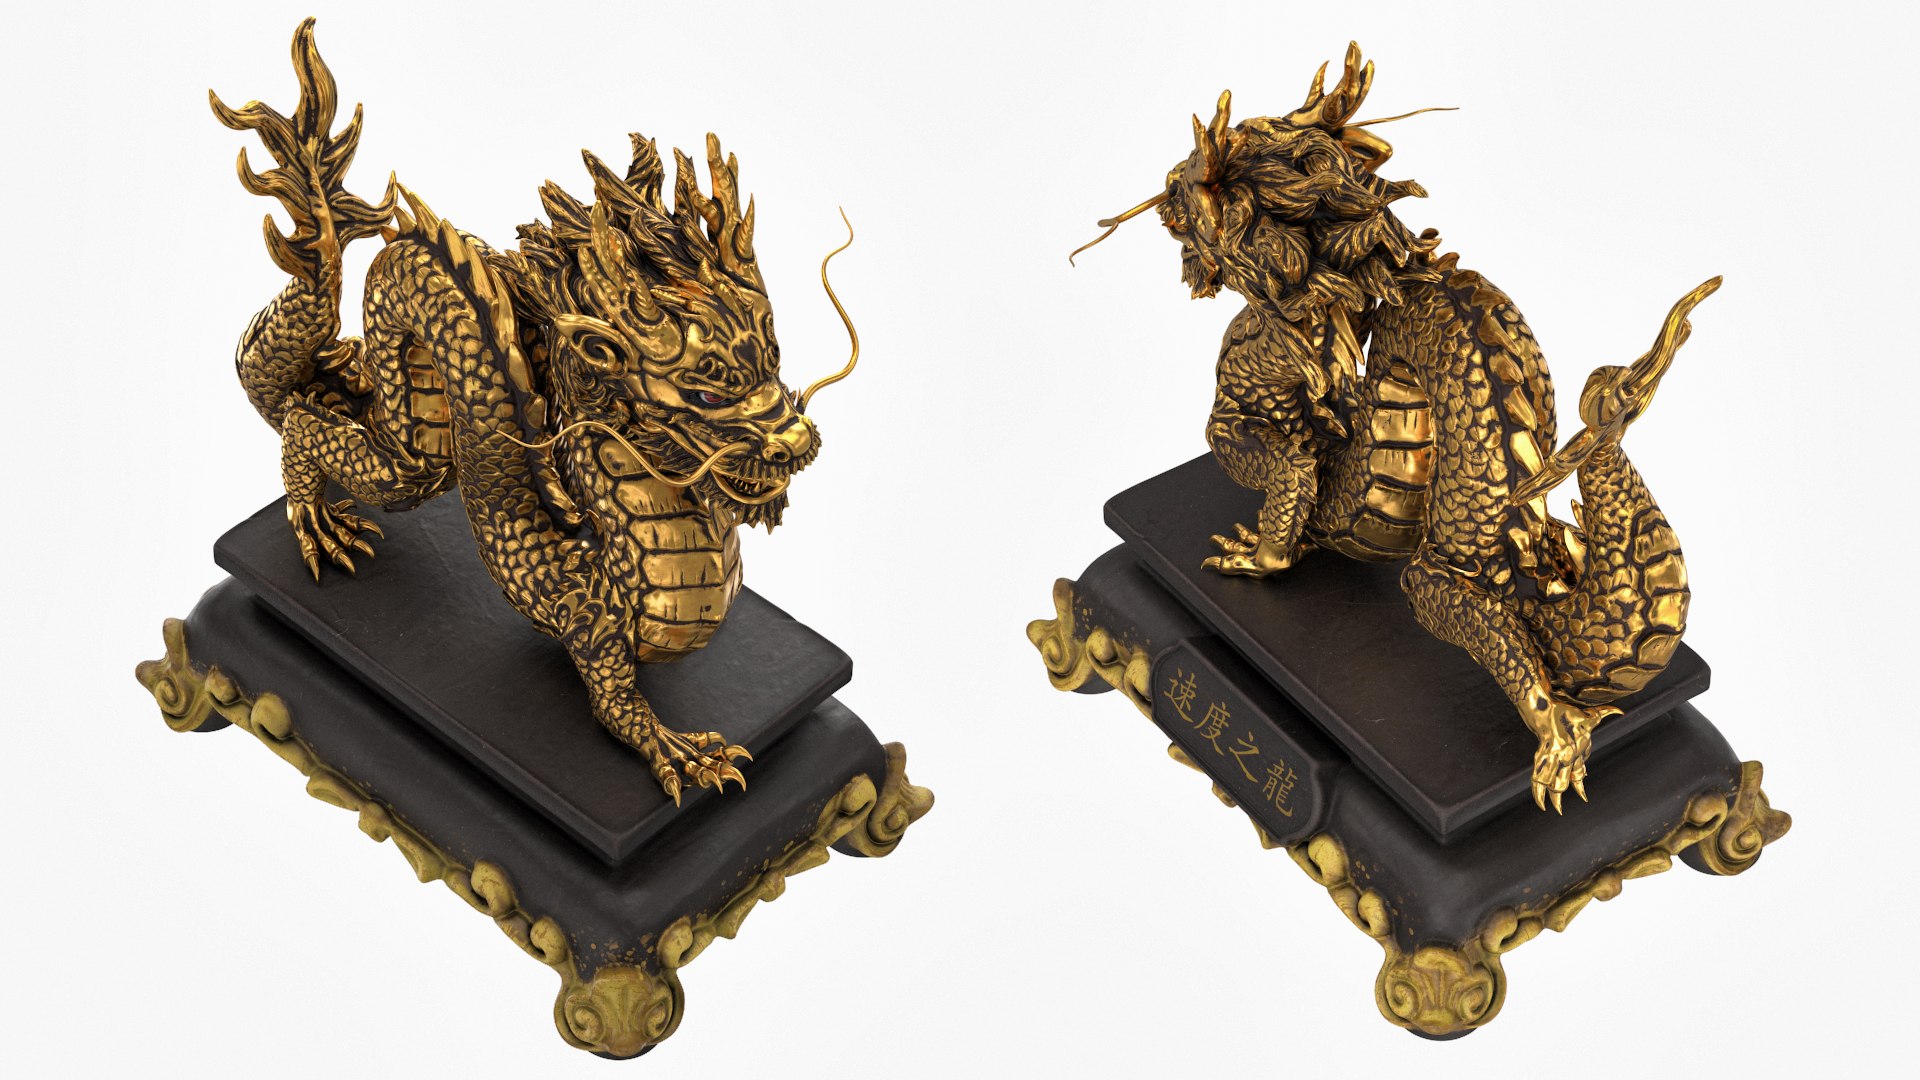 Objets BIM - Téléchargement gratuit! Sculptures 3D - Statue dragon chinois  - ACCA software